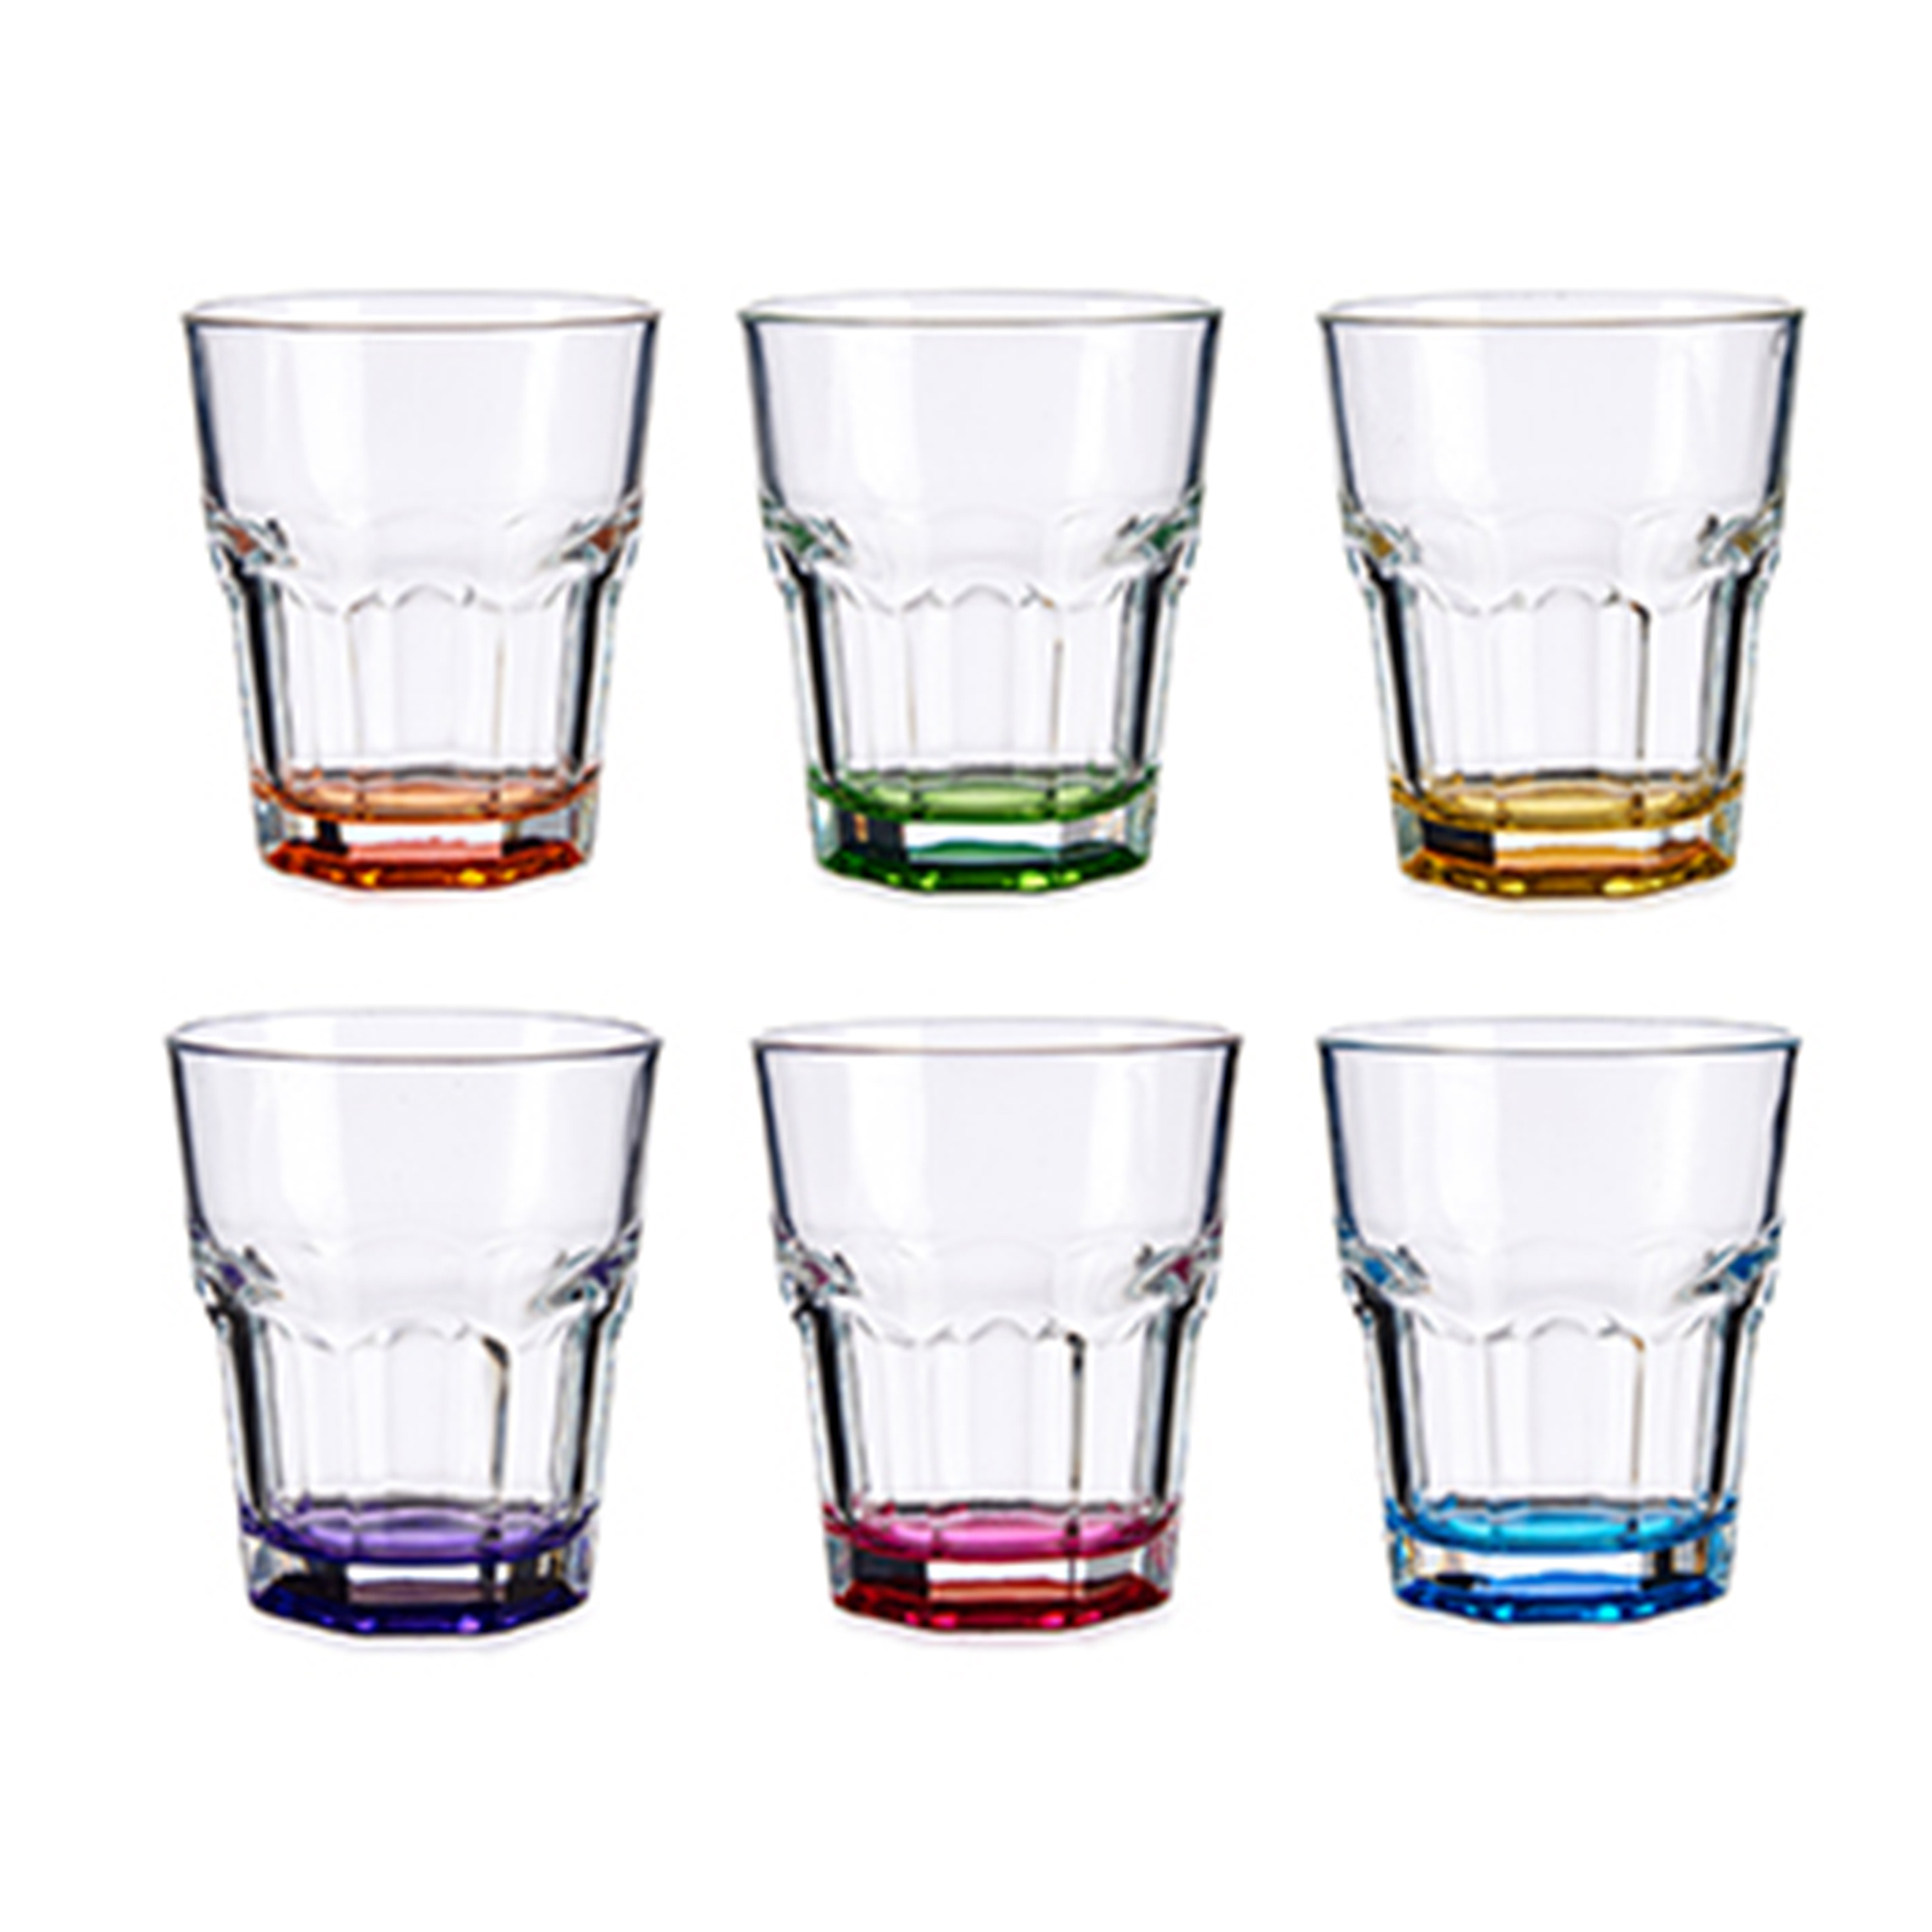 Vivalto Waterglazen/drinkglazen - 6x - kleurenmix - 285ml - 9 x 9,5 cm -